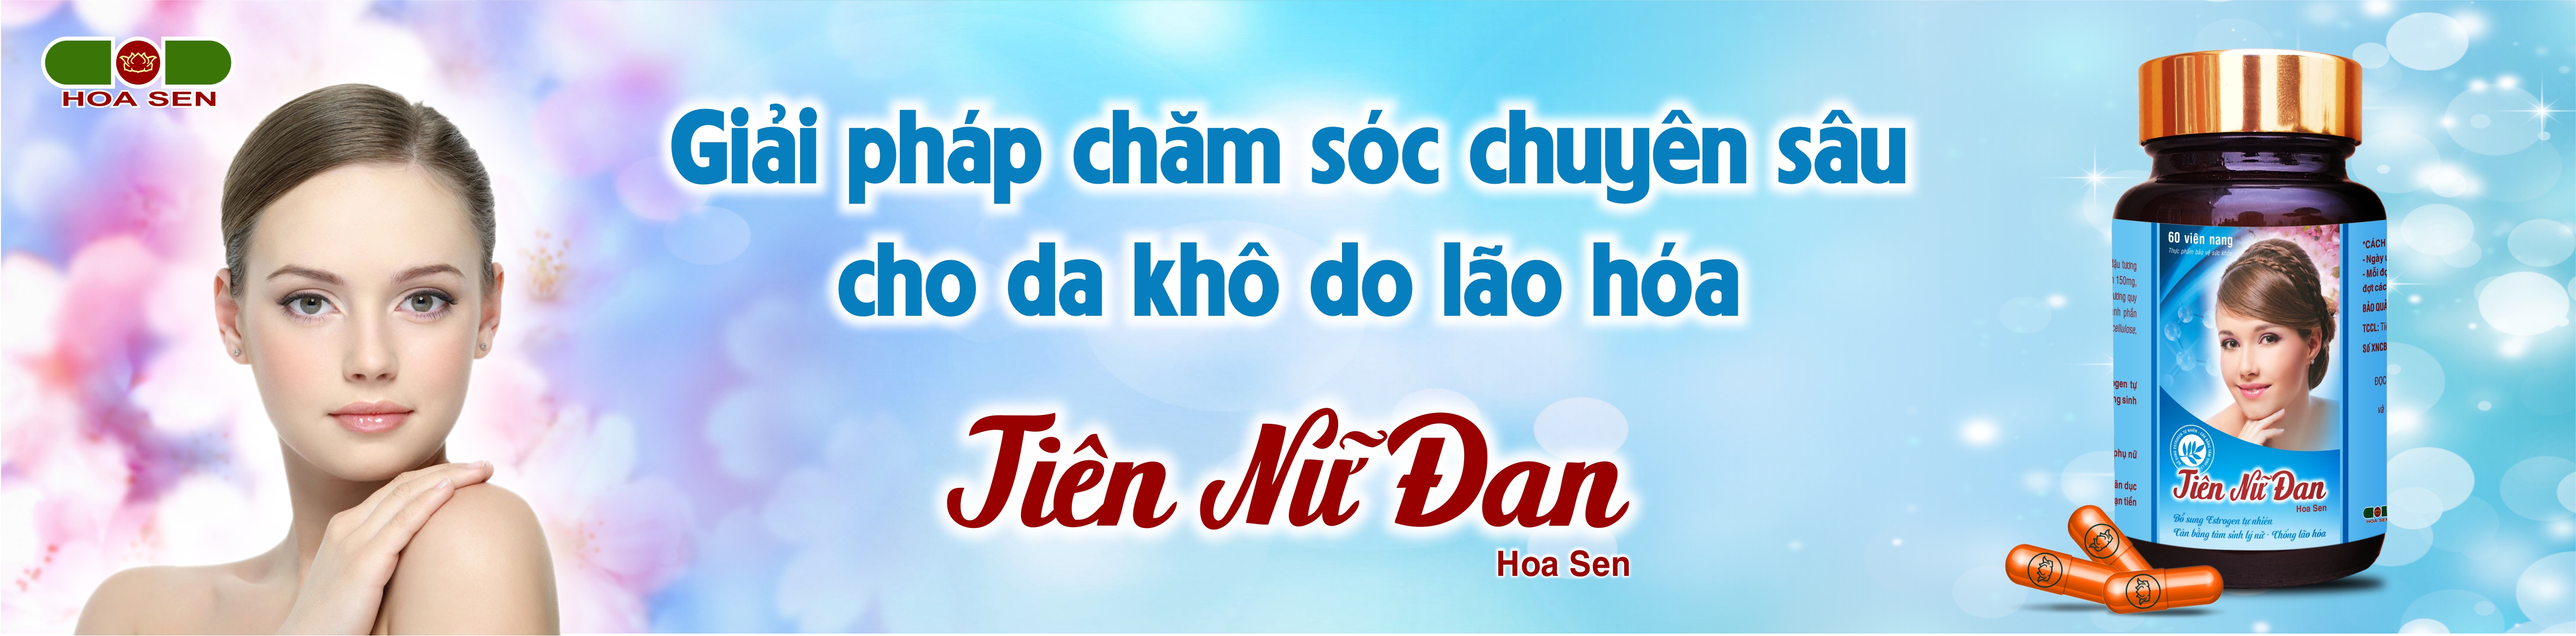 Ảnh banner Khuyên tai đẹp của Sao Việt